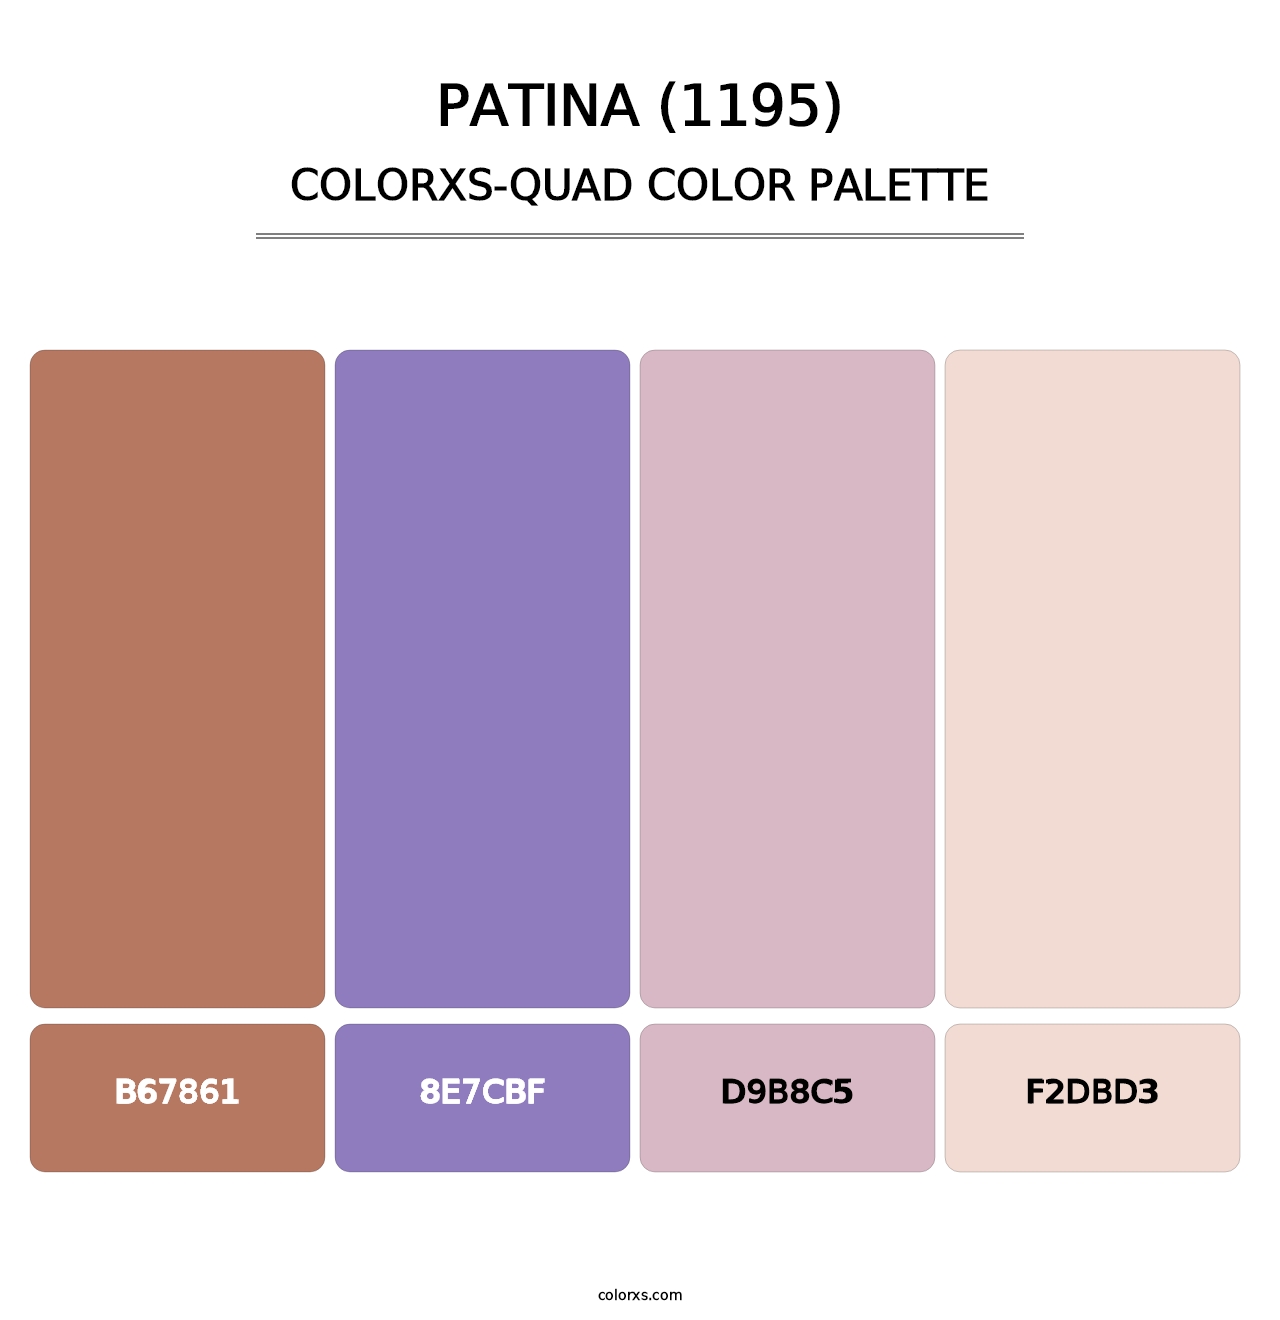 Patina (1195) - Colorxs Quad Palette